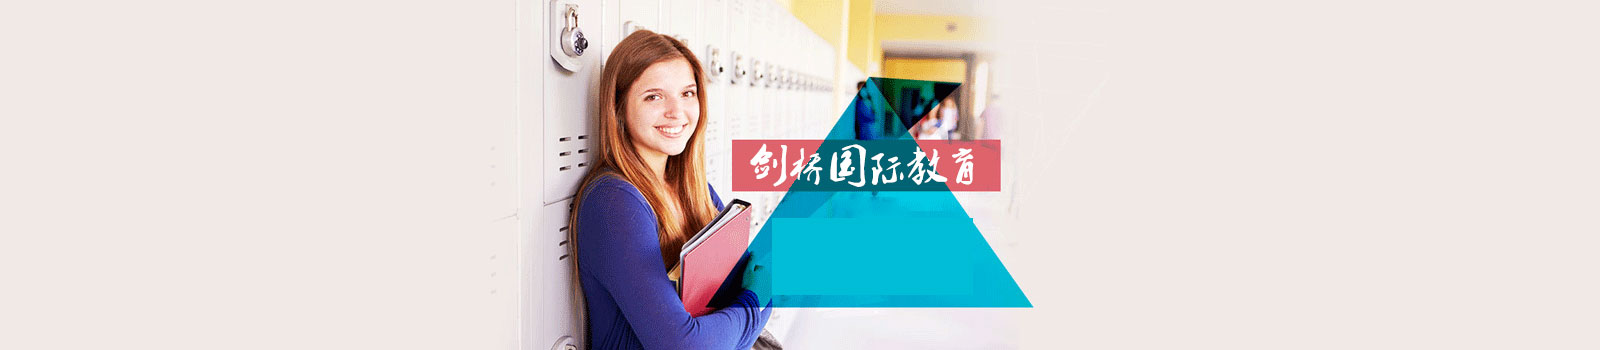 北京剑桥国际教育